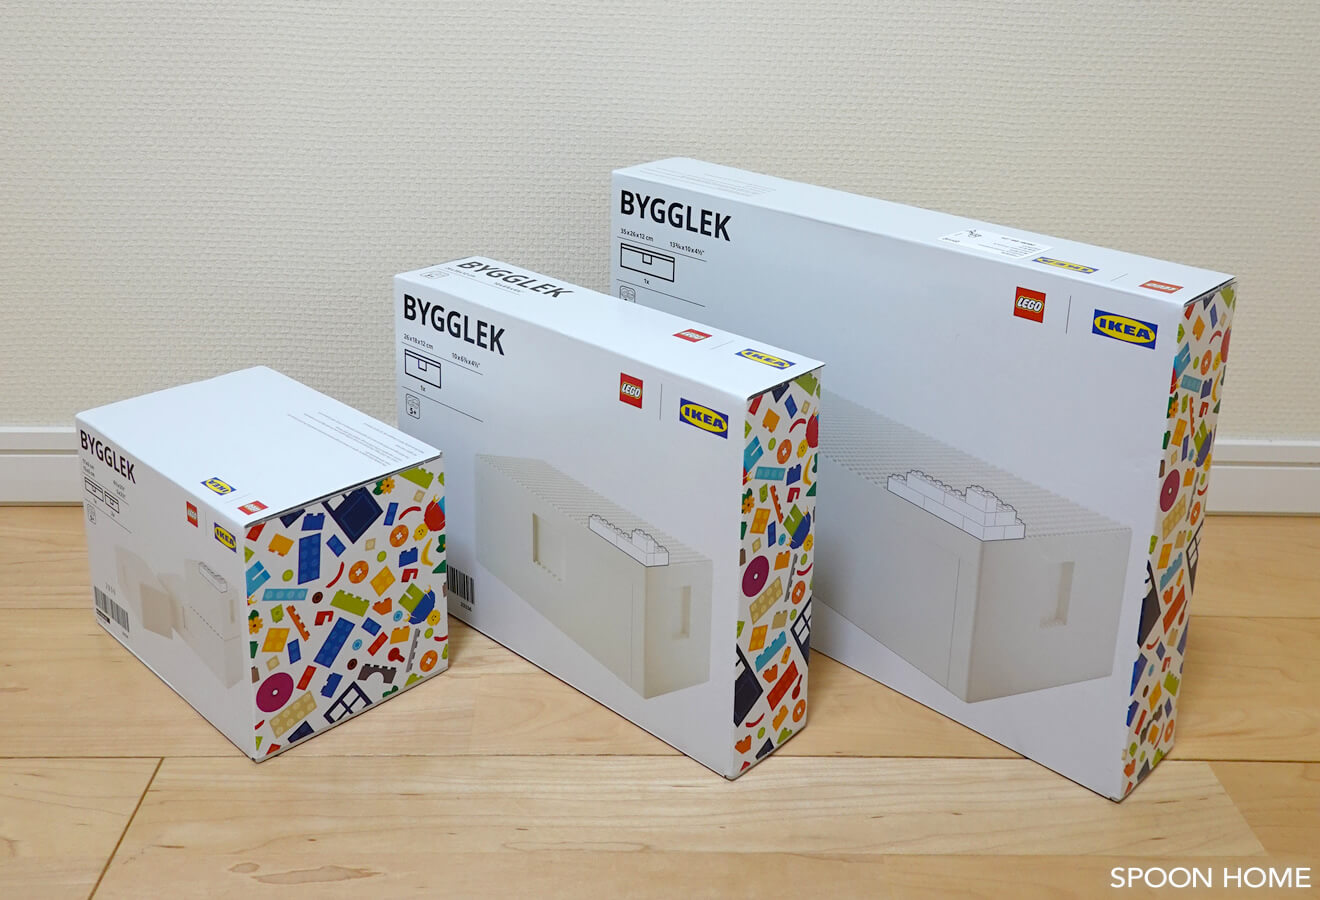 IKEAとレゴのコラボ商品「BYGGLEK」ボックス収納例とブロックセットの 